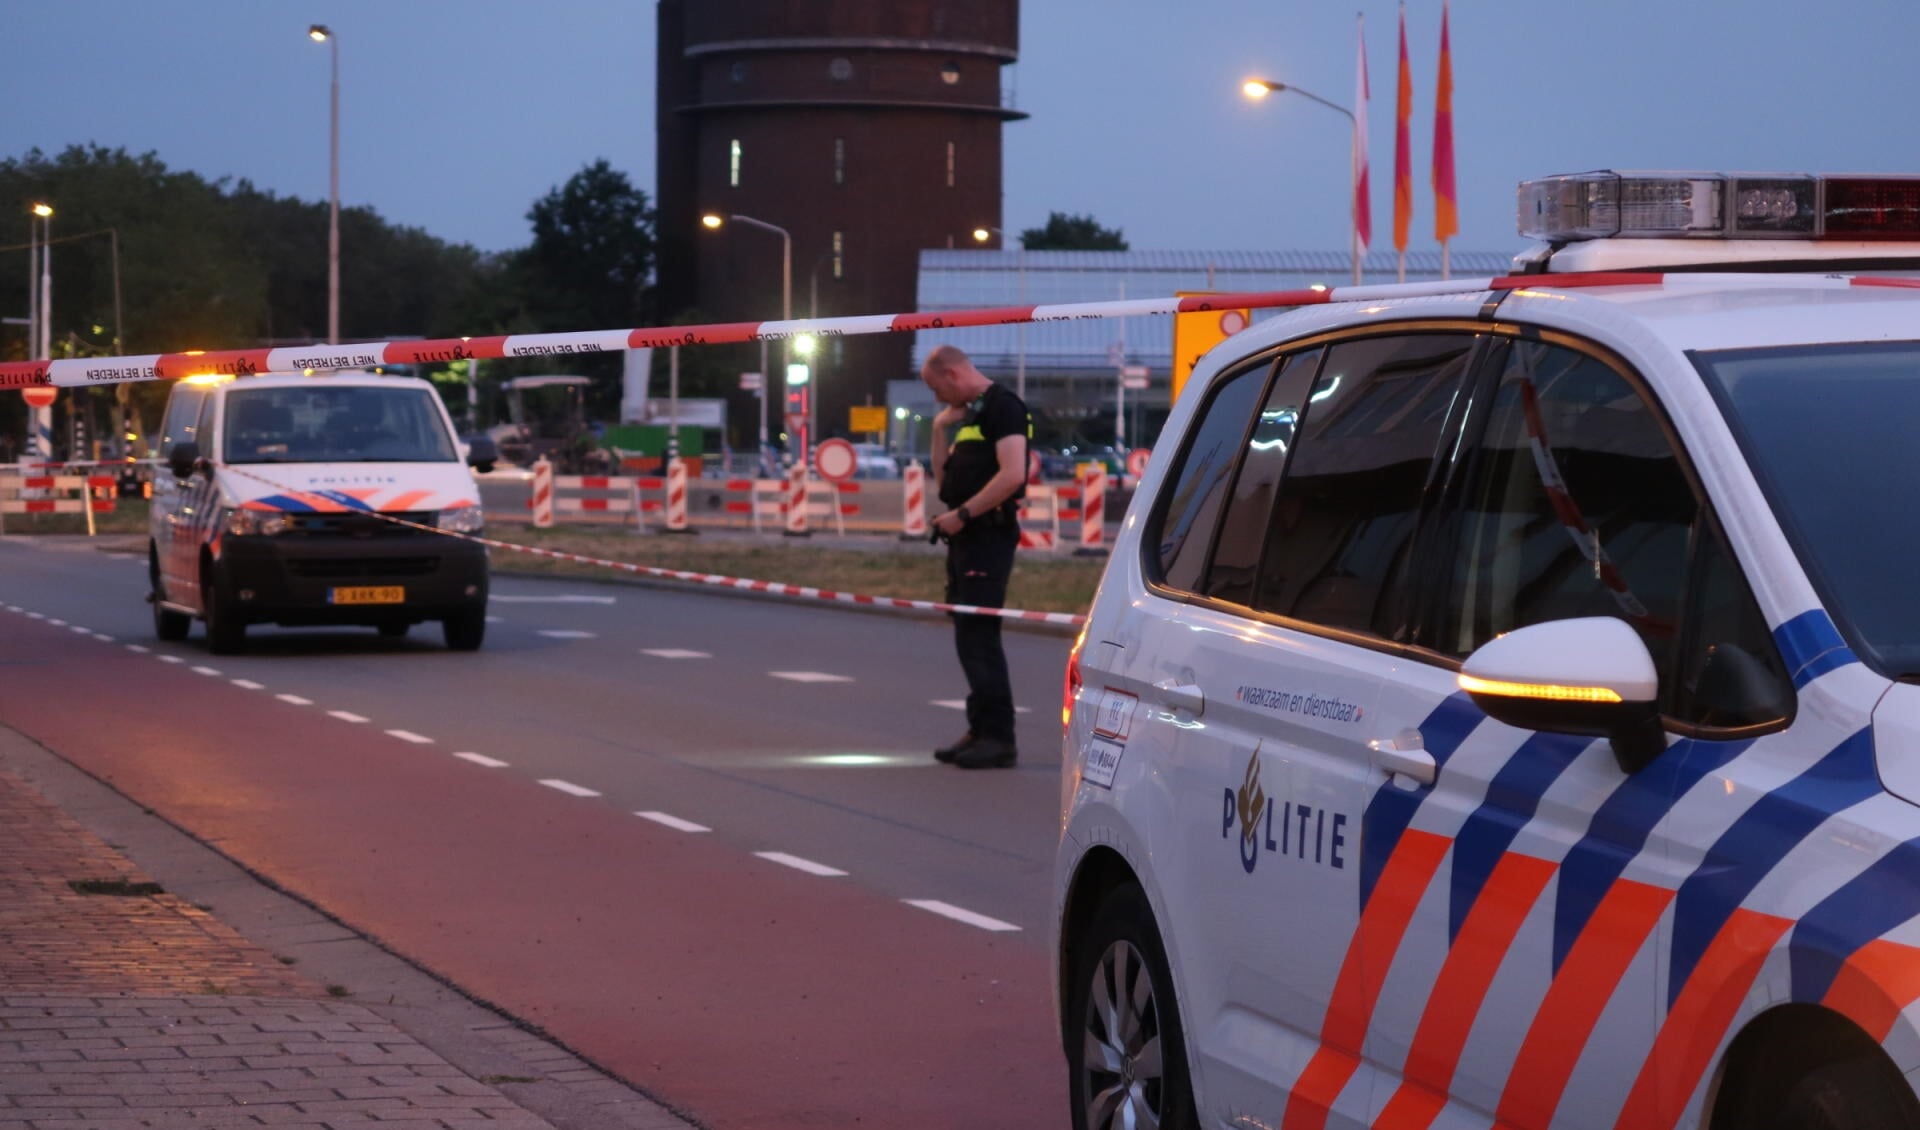 De politie bij de Konijnenberg op de avond van de schietpartij